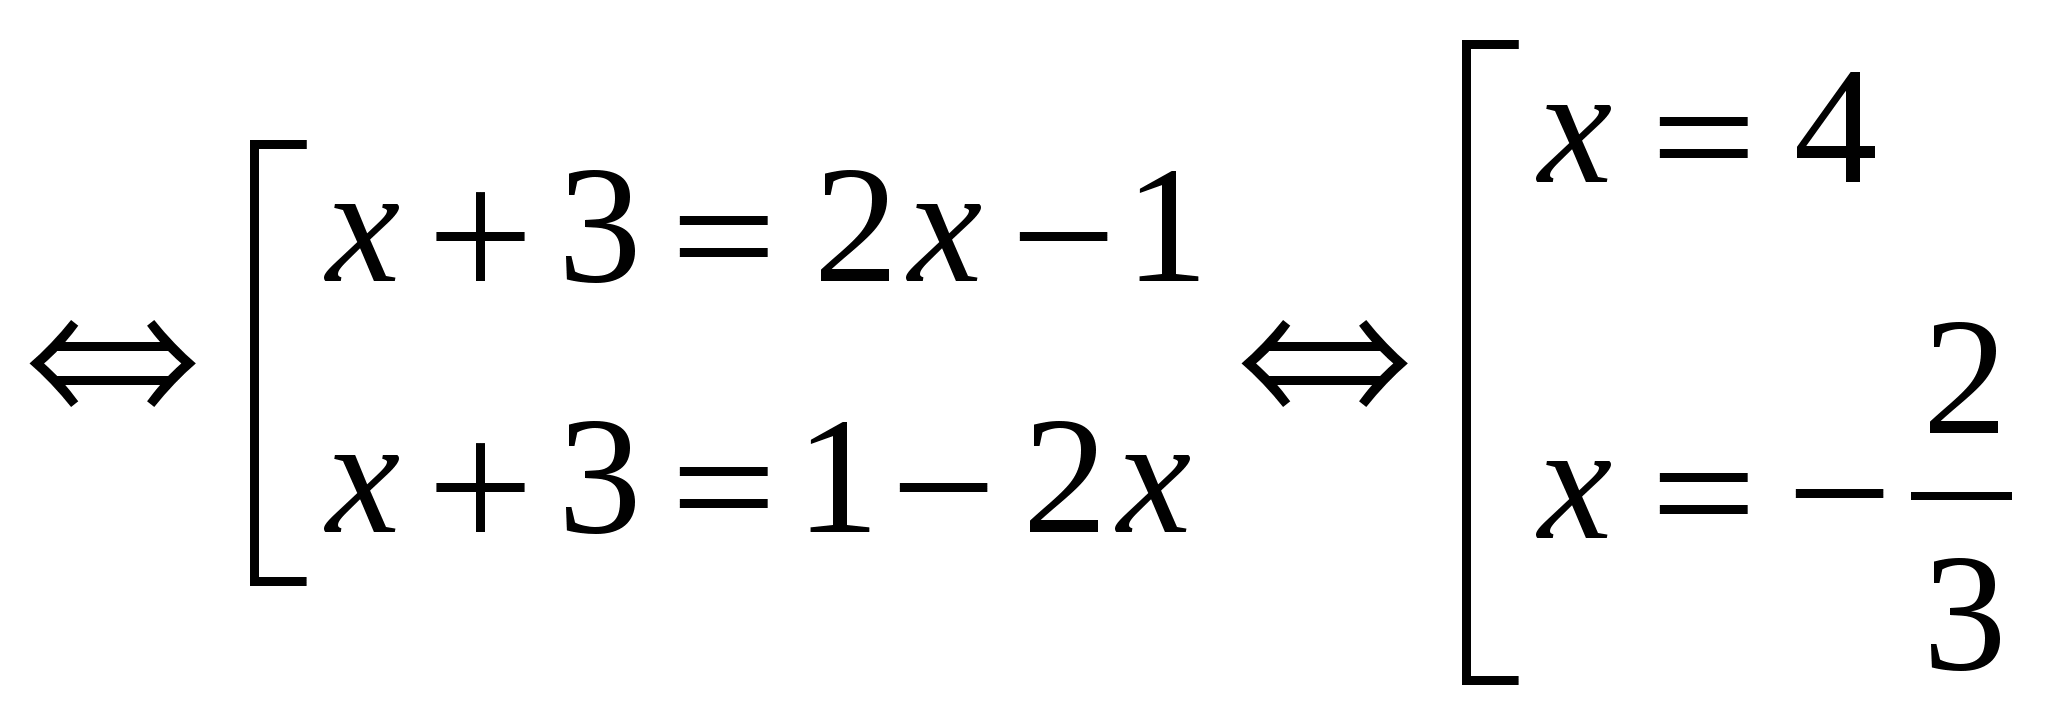 Модуль икс плюс 5 равно 2